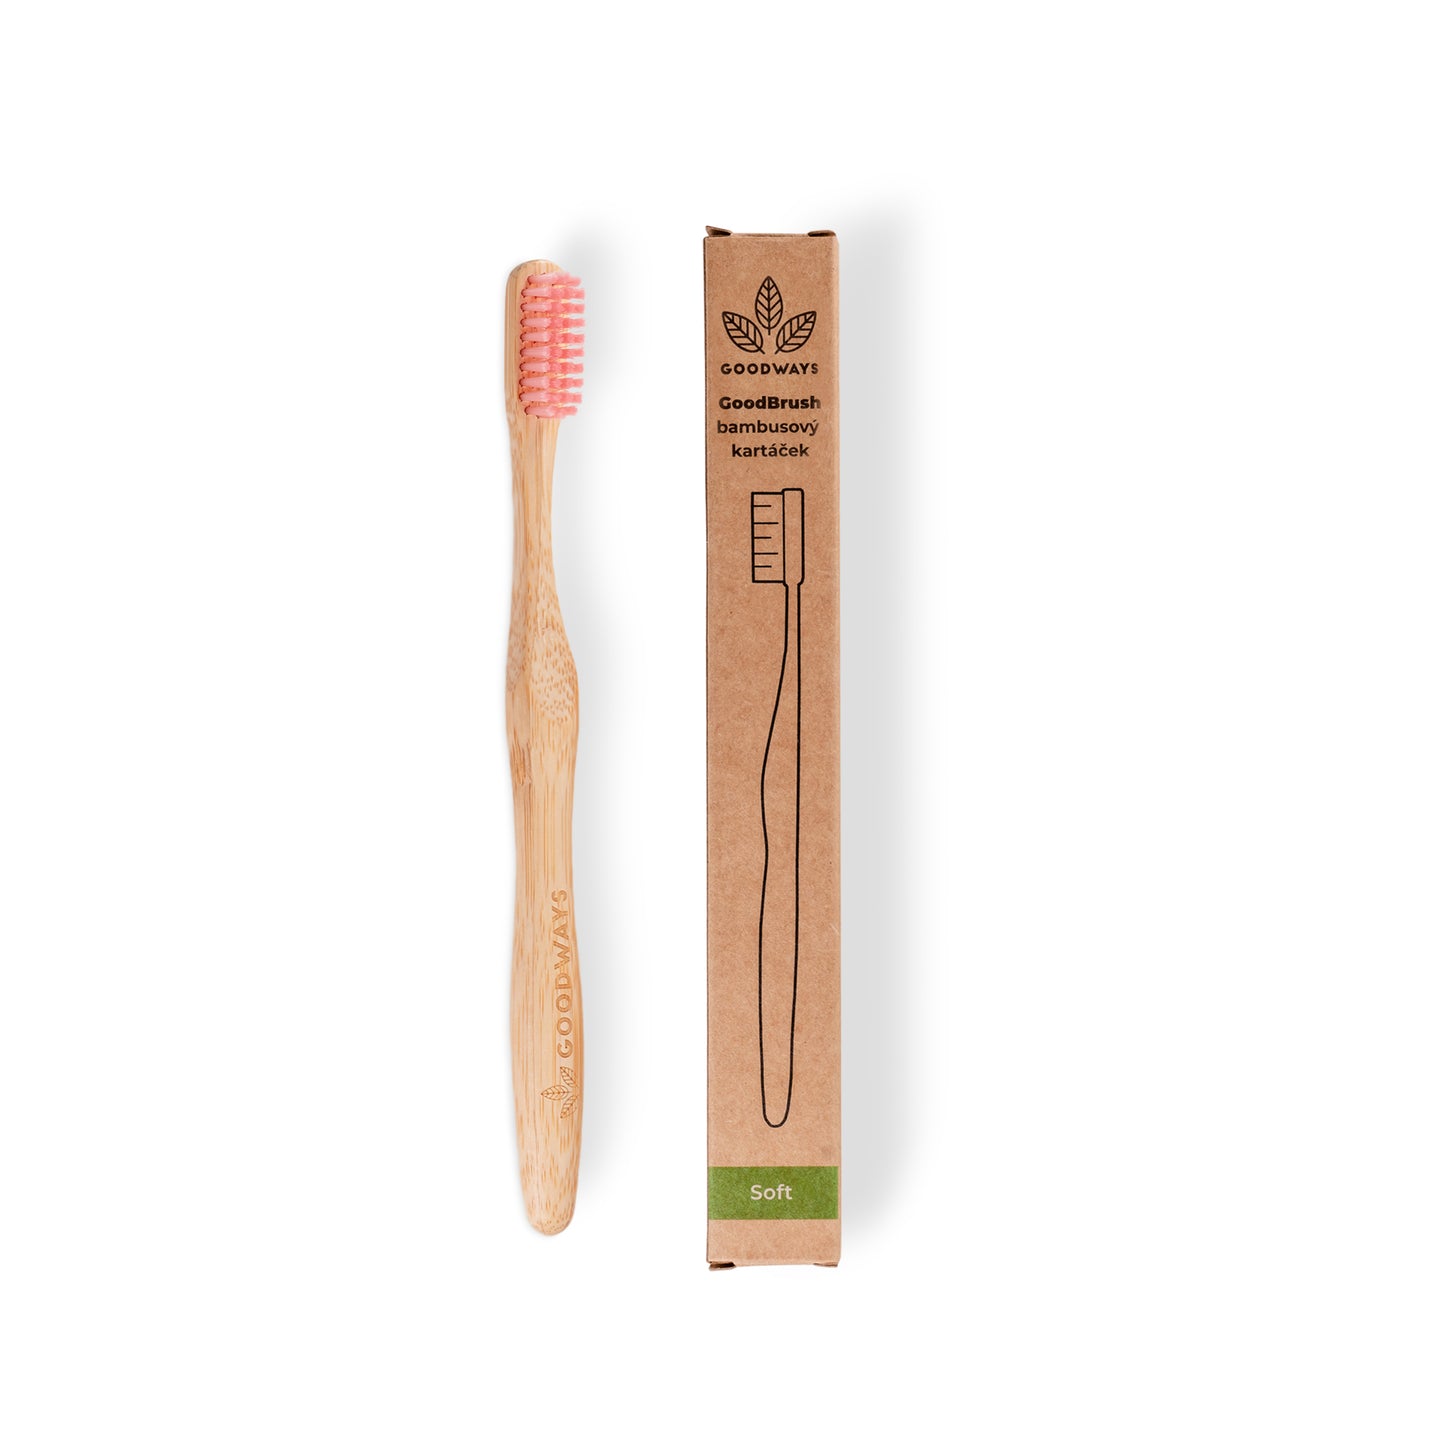 GoodBrush bamboo toothbrush